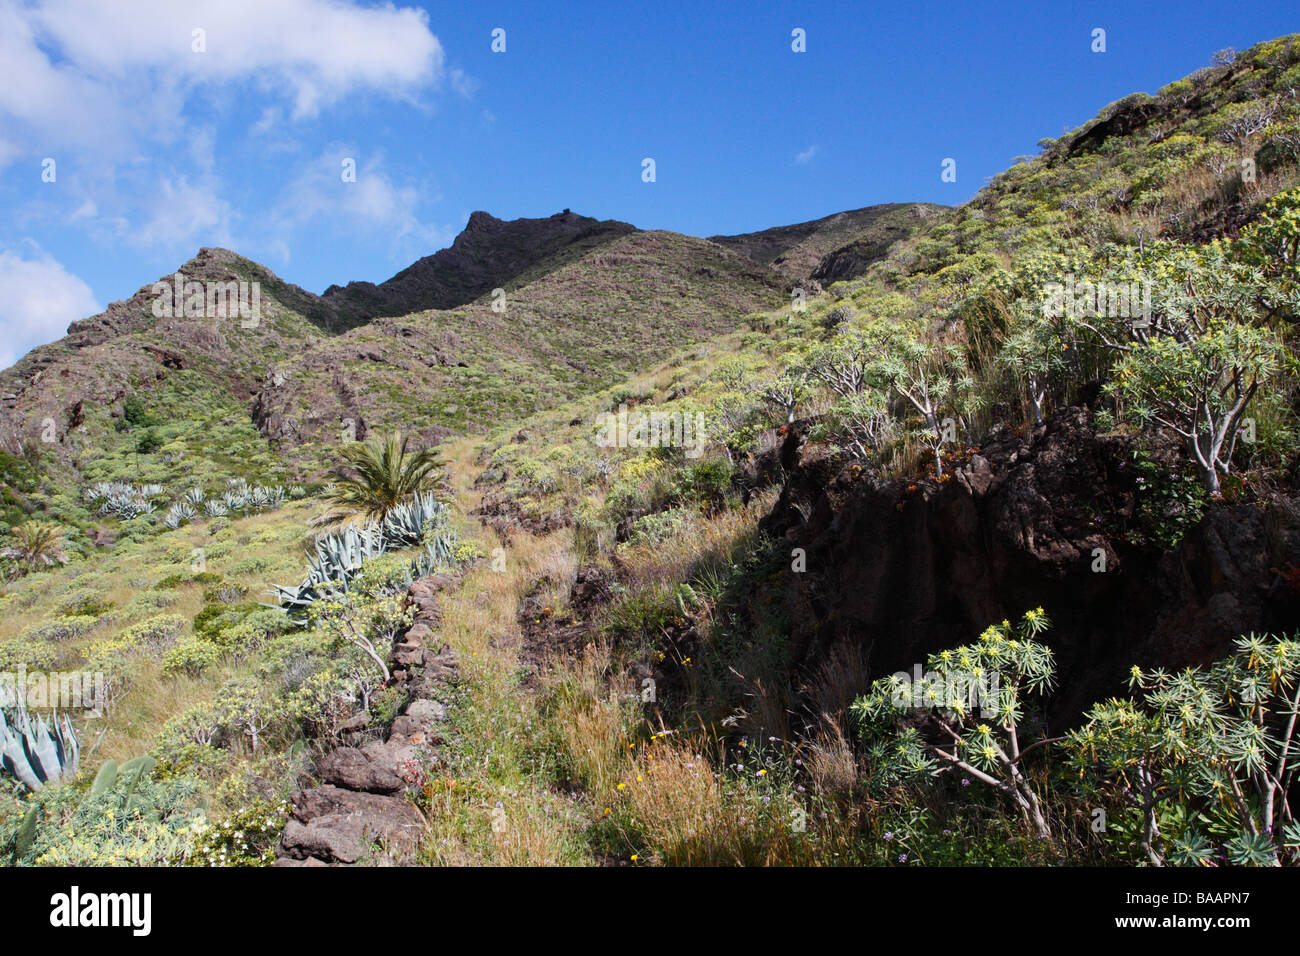 Near Las Casetas, La Gomera, Canary Islands Stock Photo